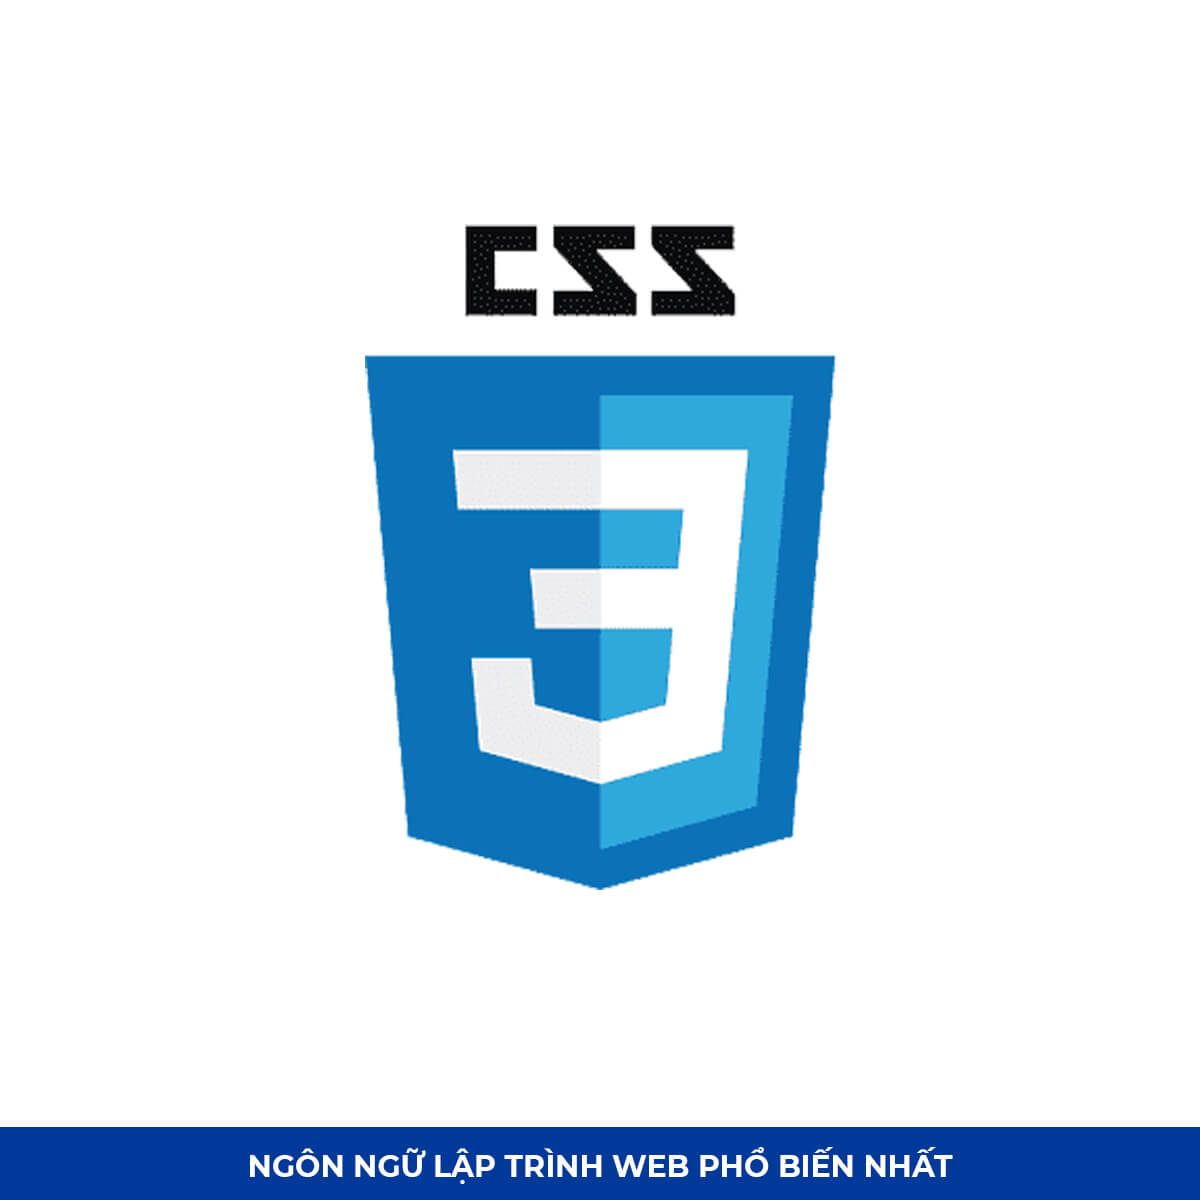 Top Ngôn ngữ lập trình web #10: CSS